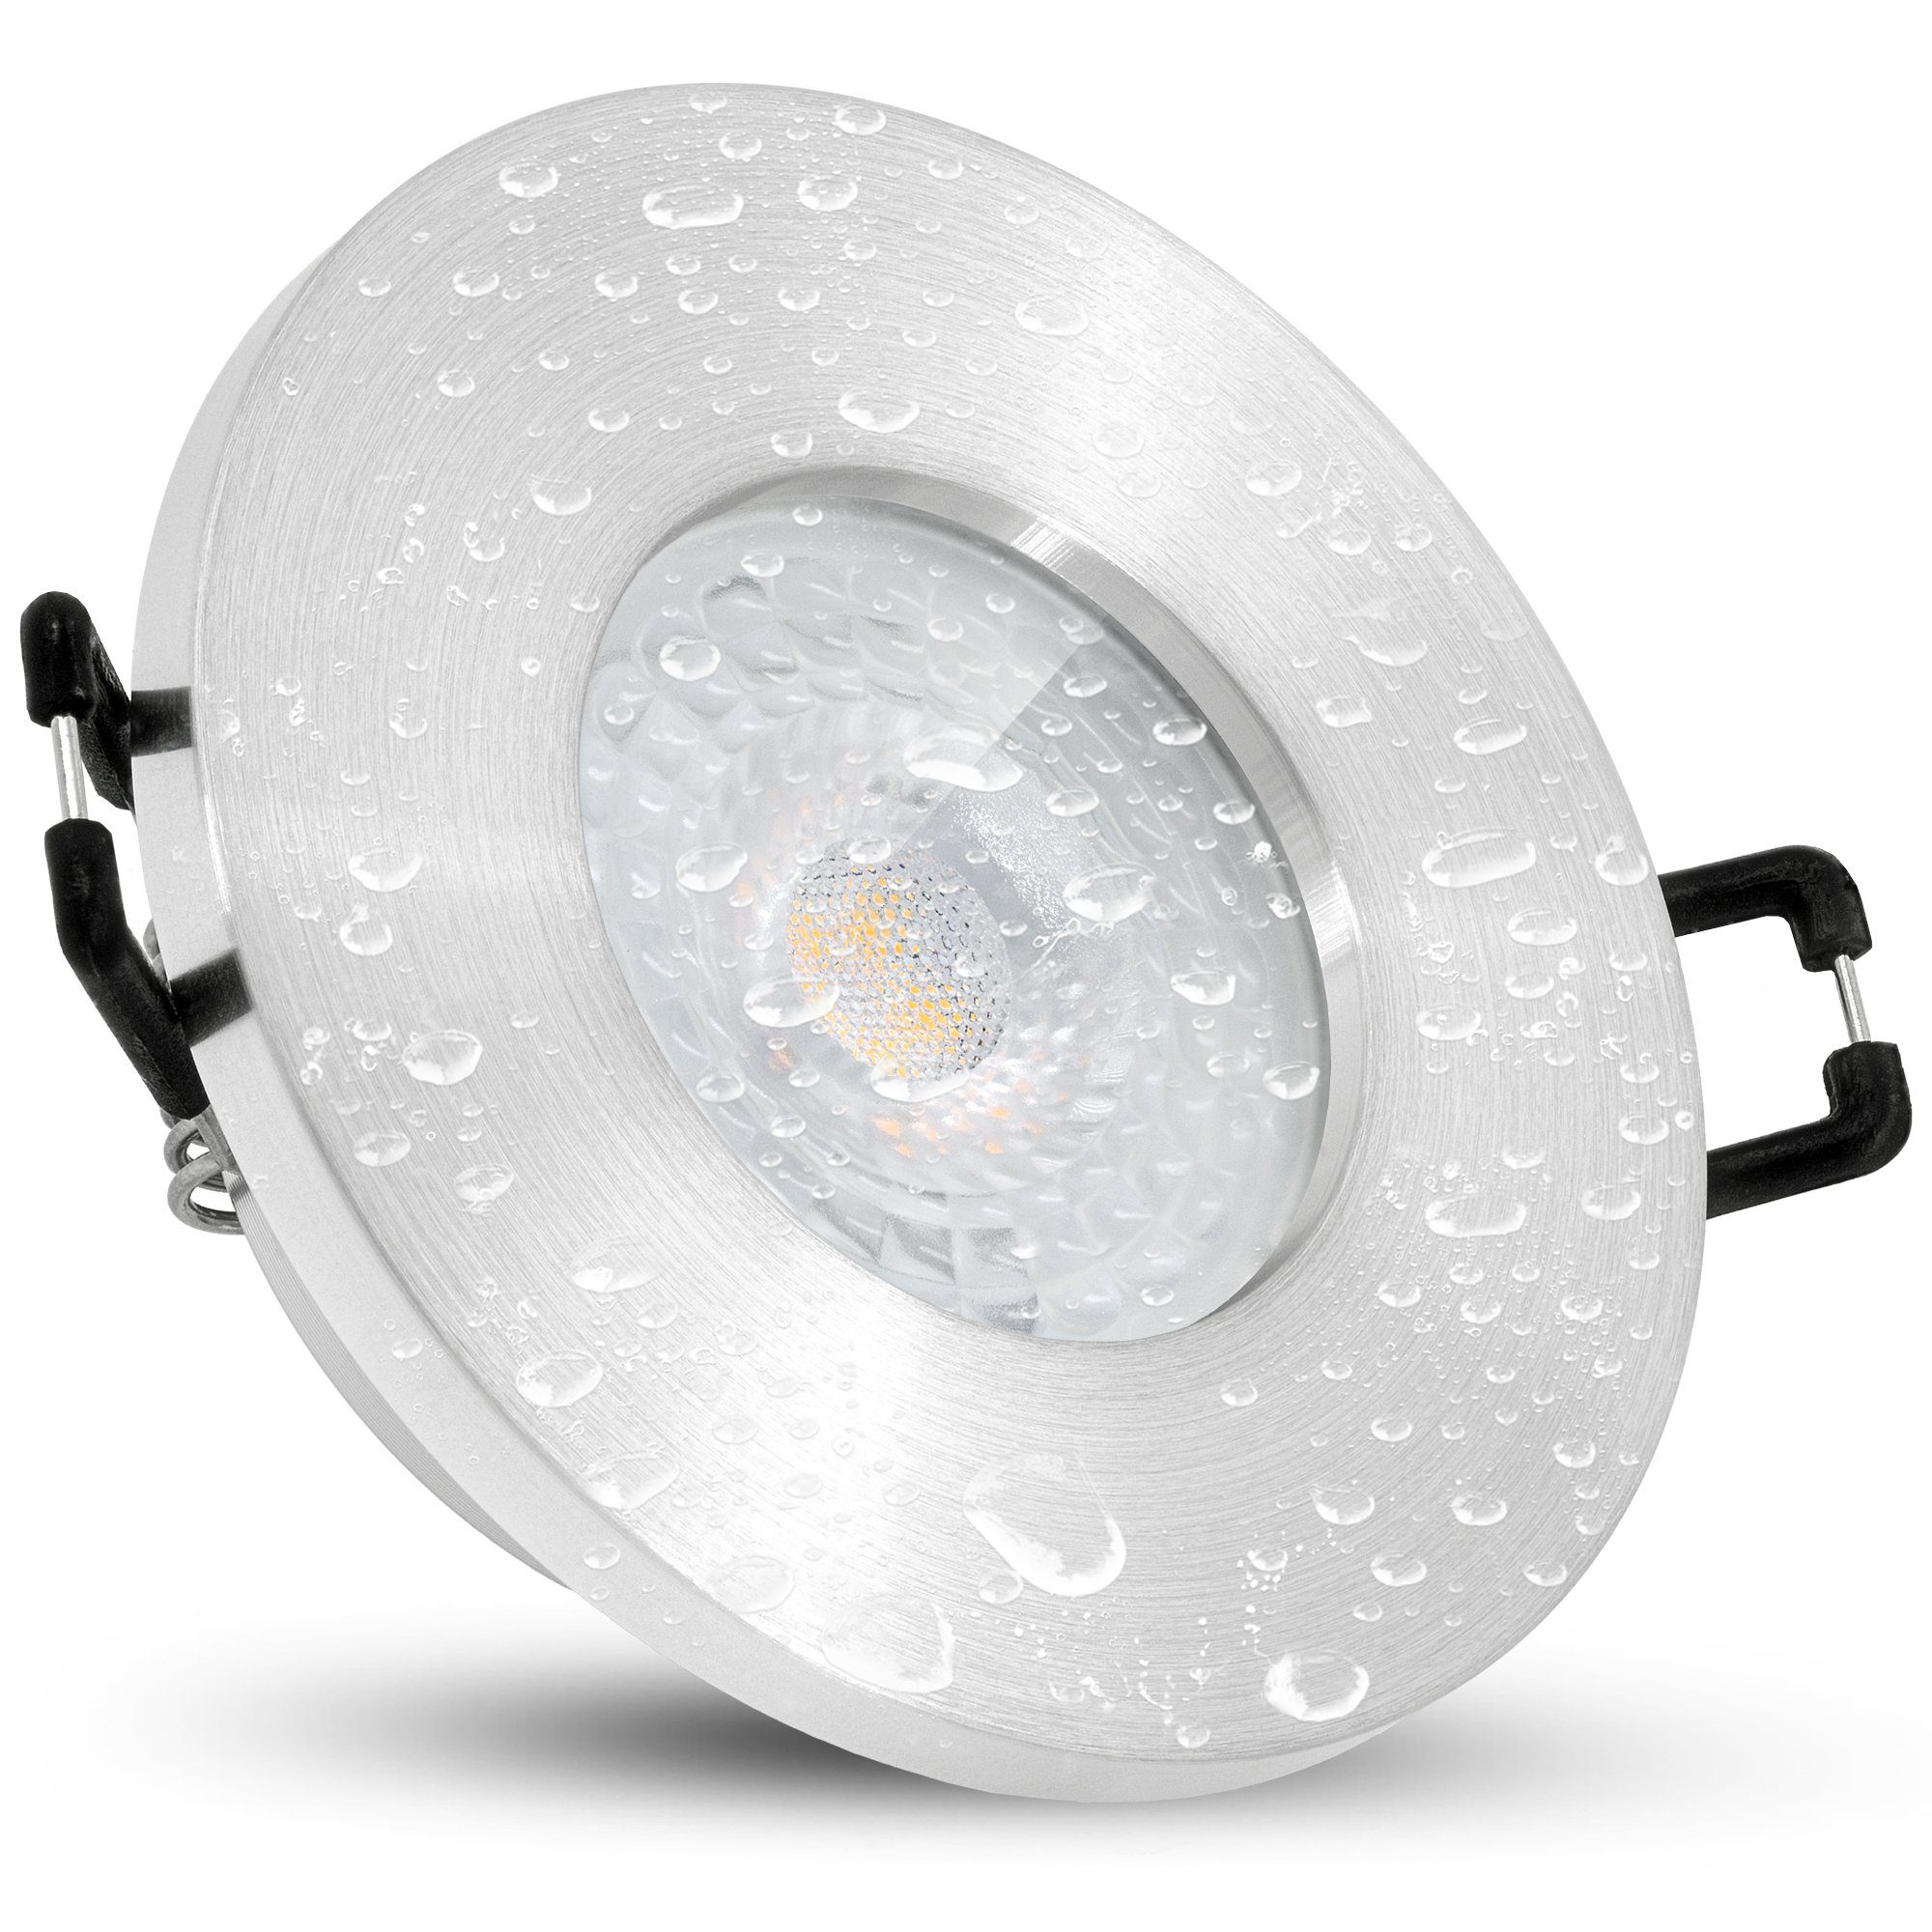 linovum LED Leuchtmittel Leuchtmittel LED gebuersteter Optik IP65 5W, inklusive, Einbaustrahler LED Extra inklusive Einbaustrahler in flacher